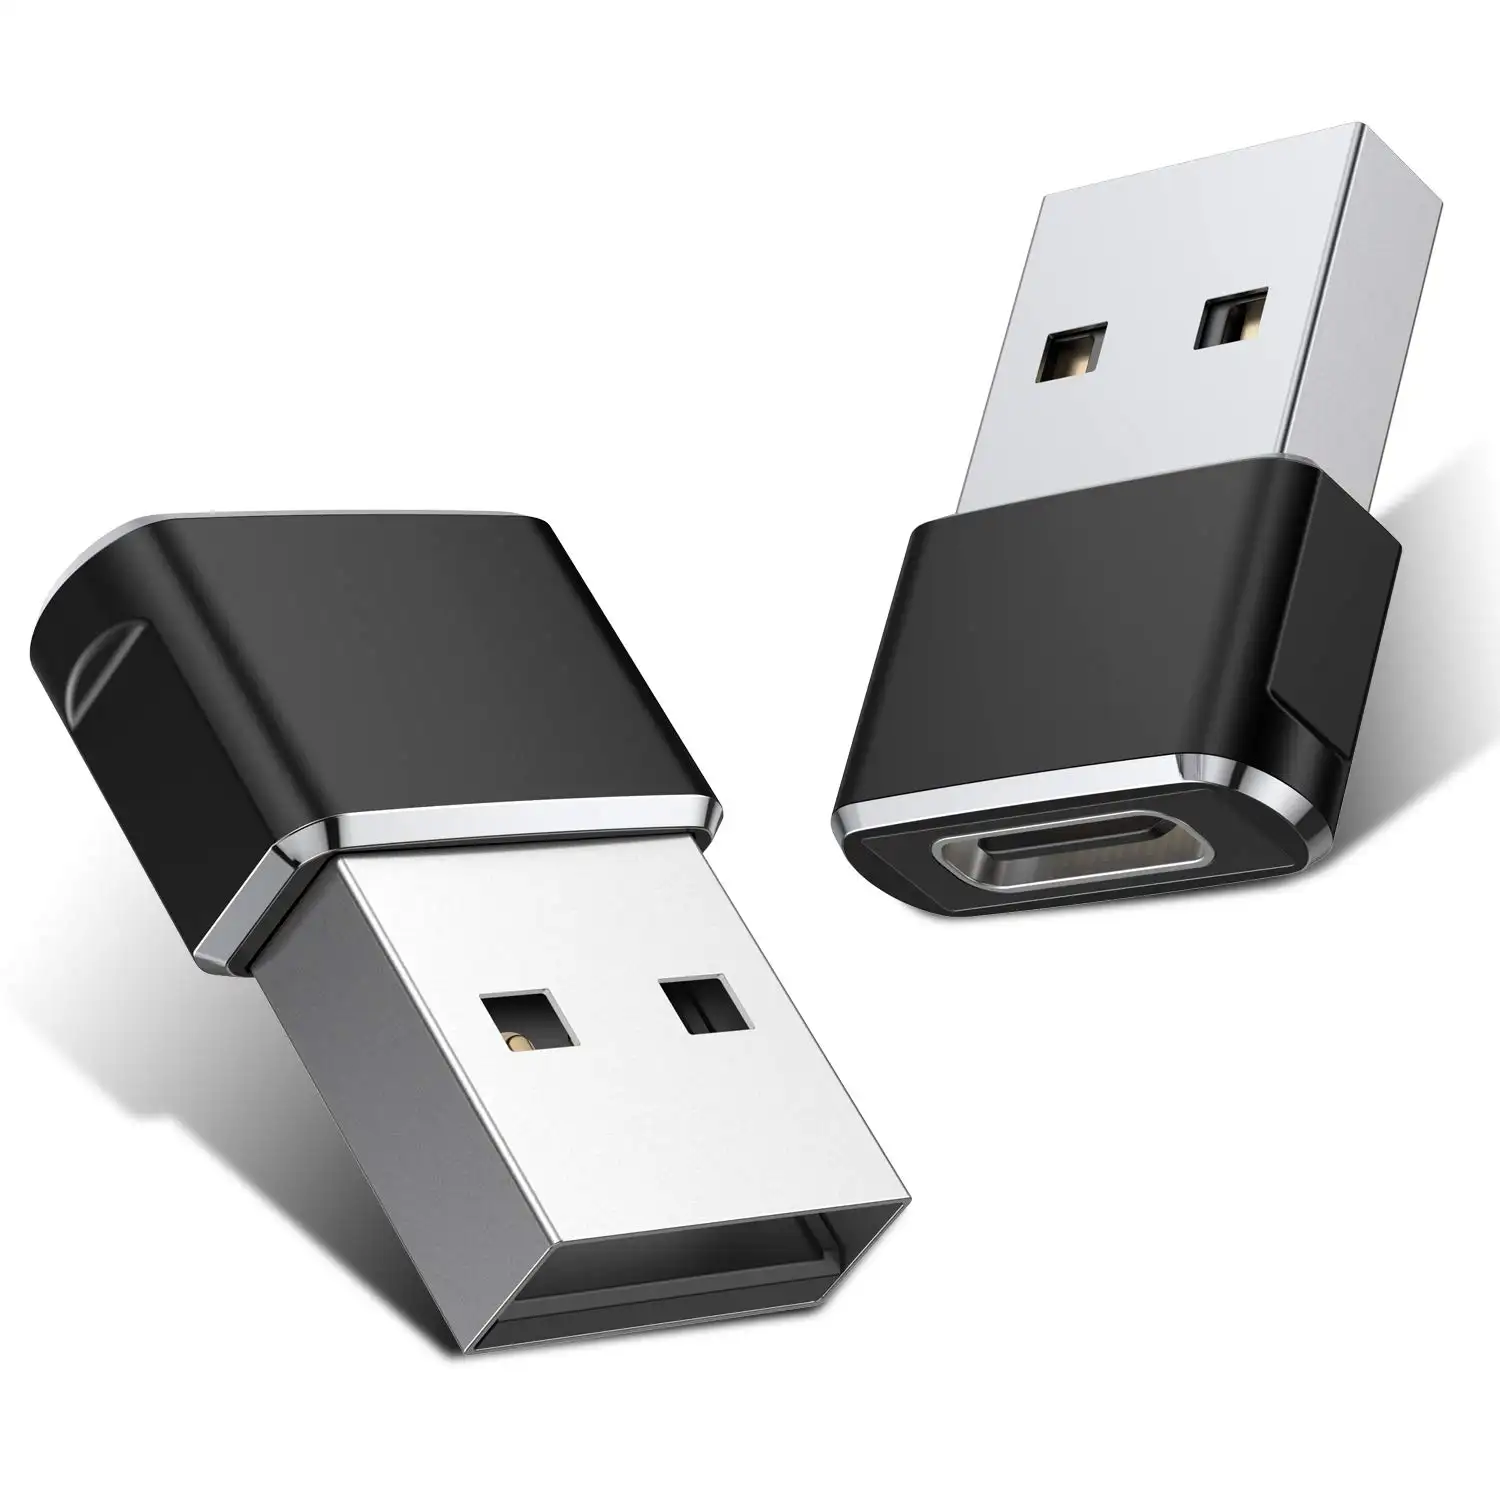 Adaptador USB C hembra a USB A macho Adaptador de cable de cargador tipo C de aleación de aluminio para iP 11 12